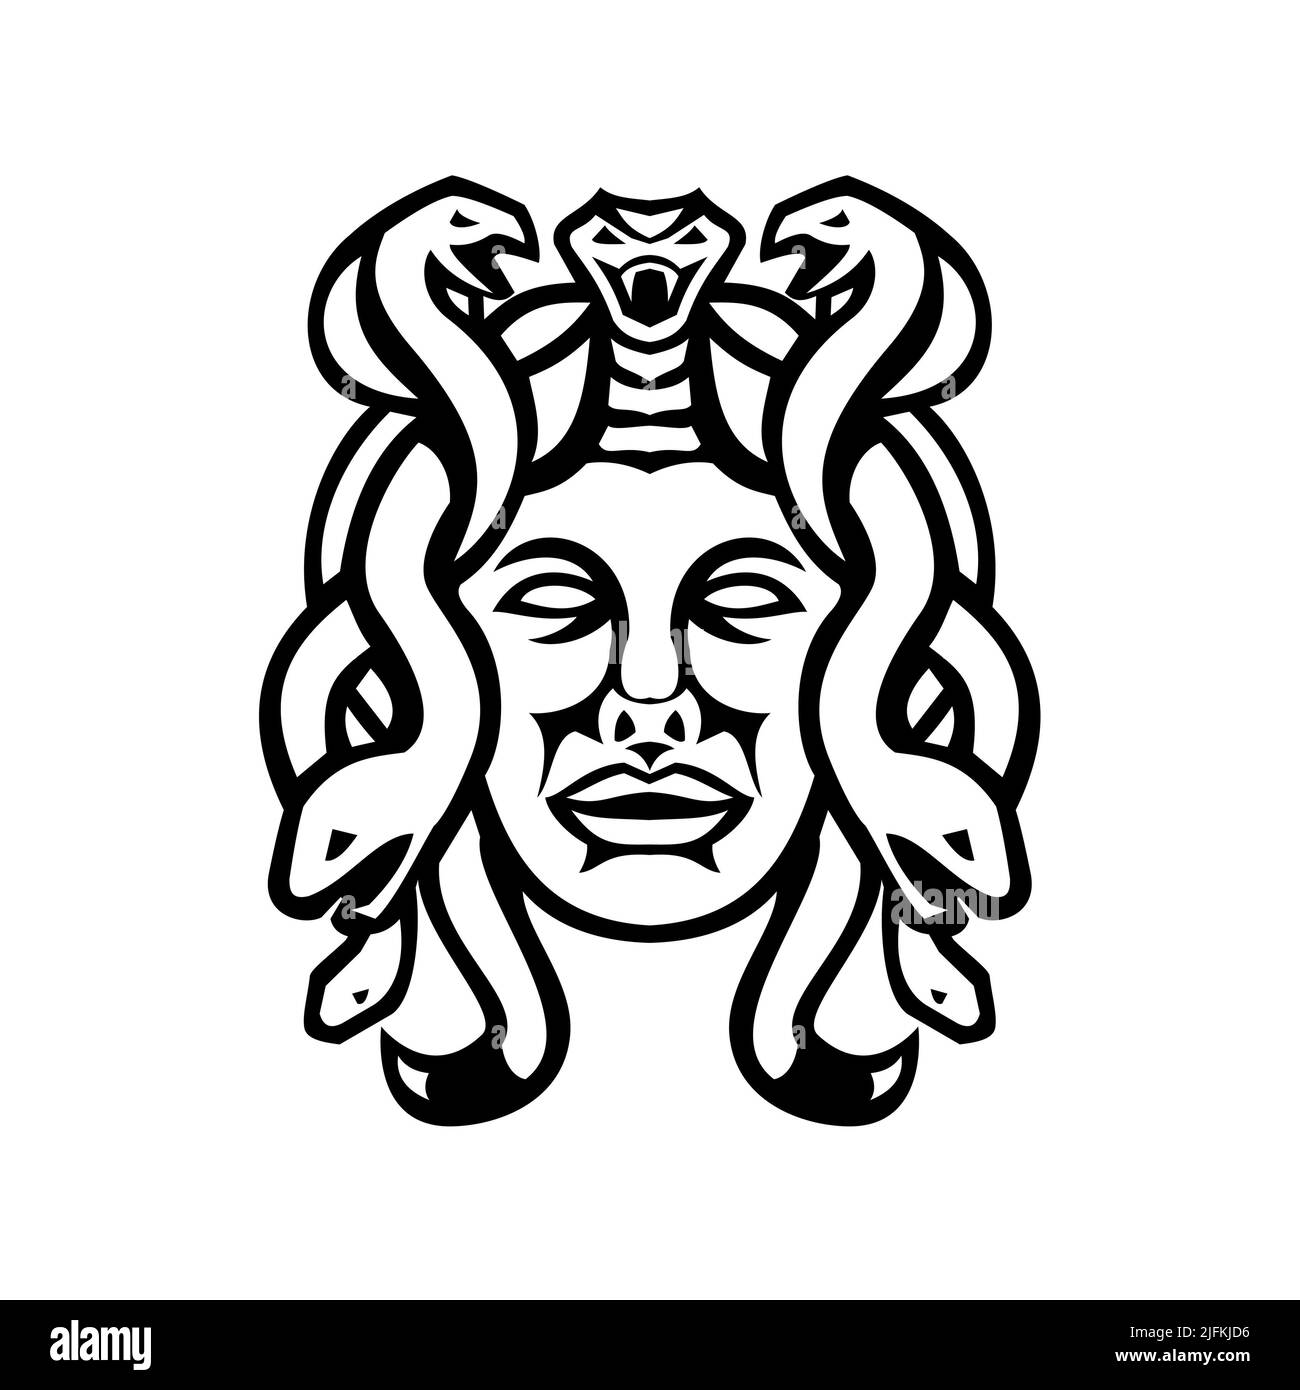 Medusa gorgon goddess, black silhouette vector - Stock